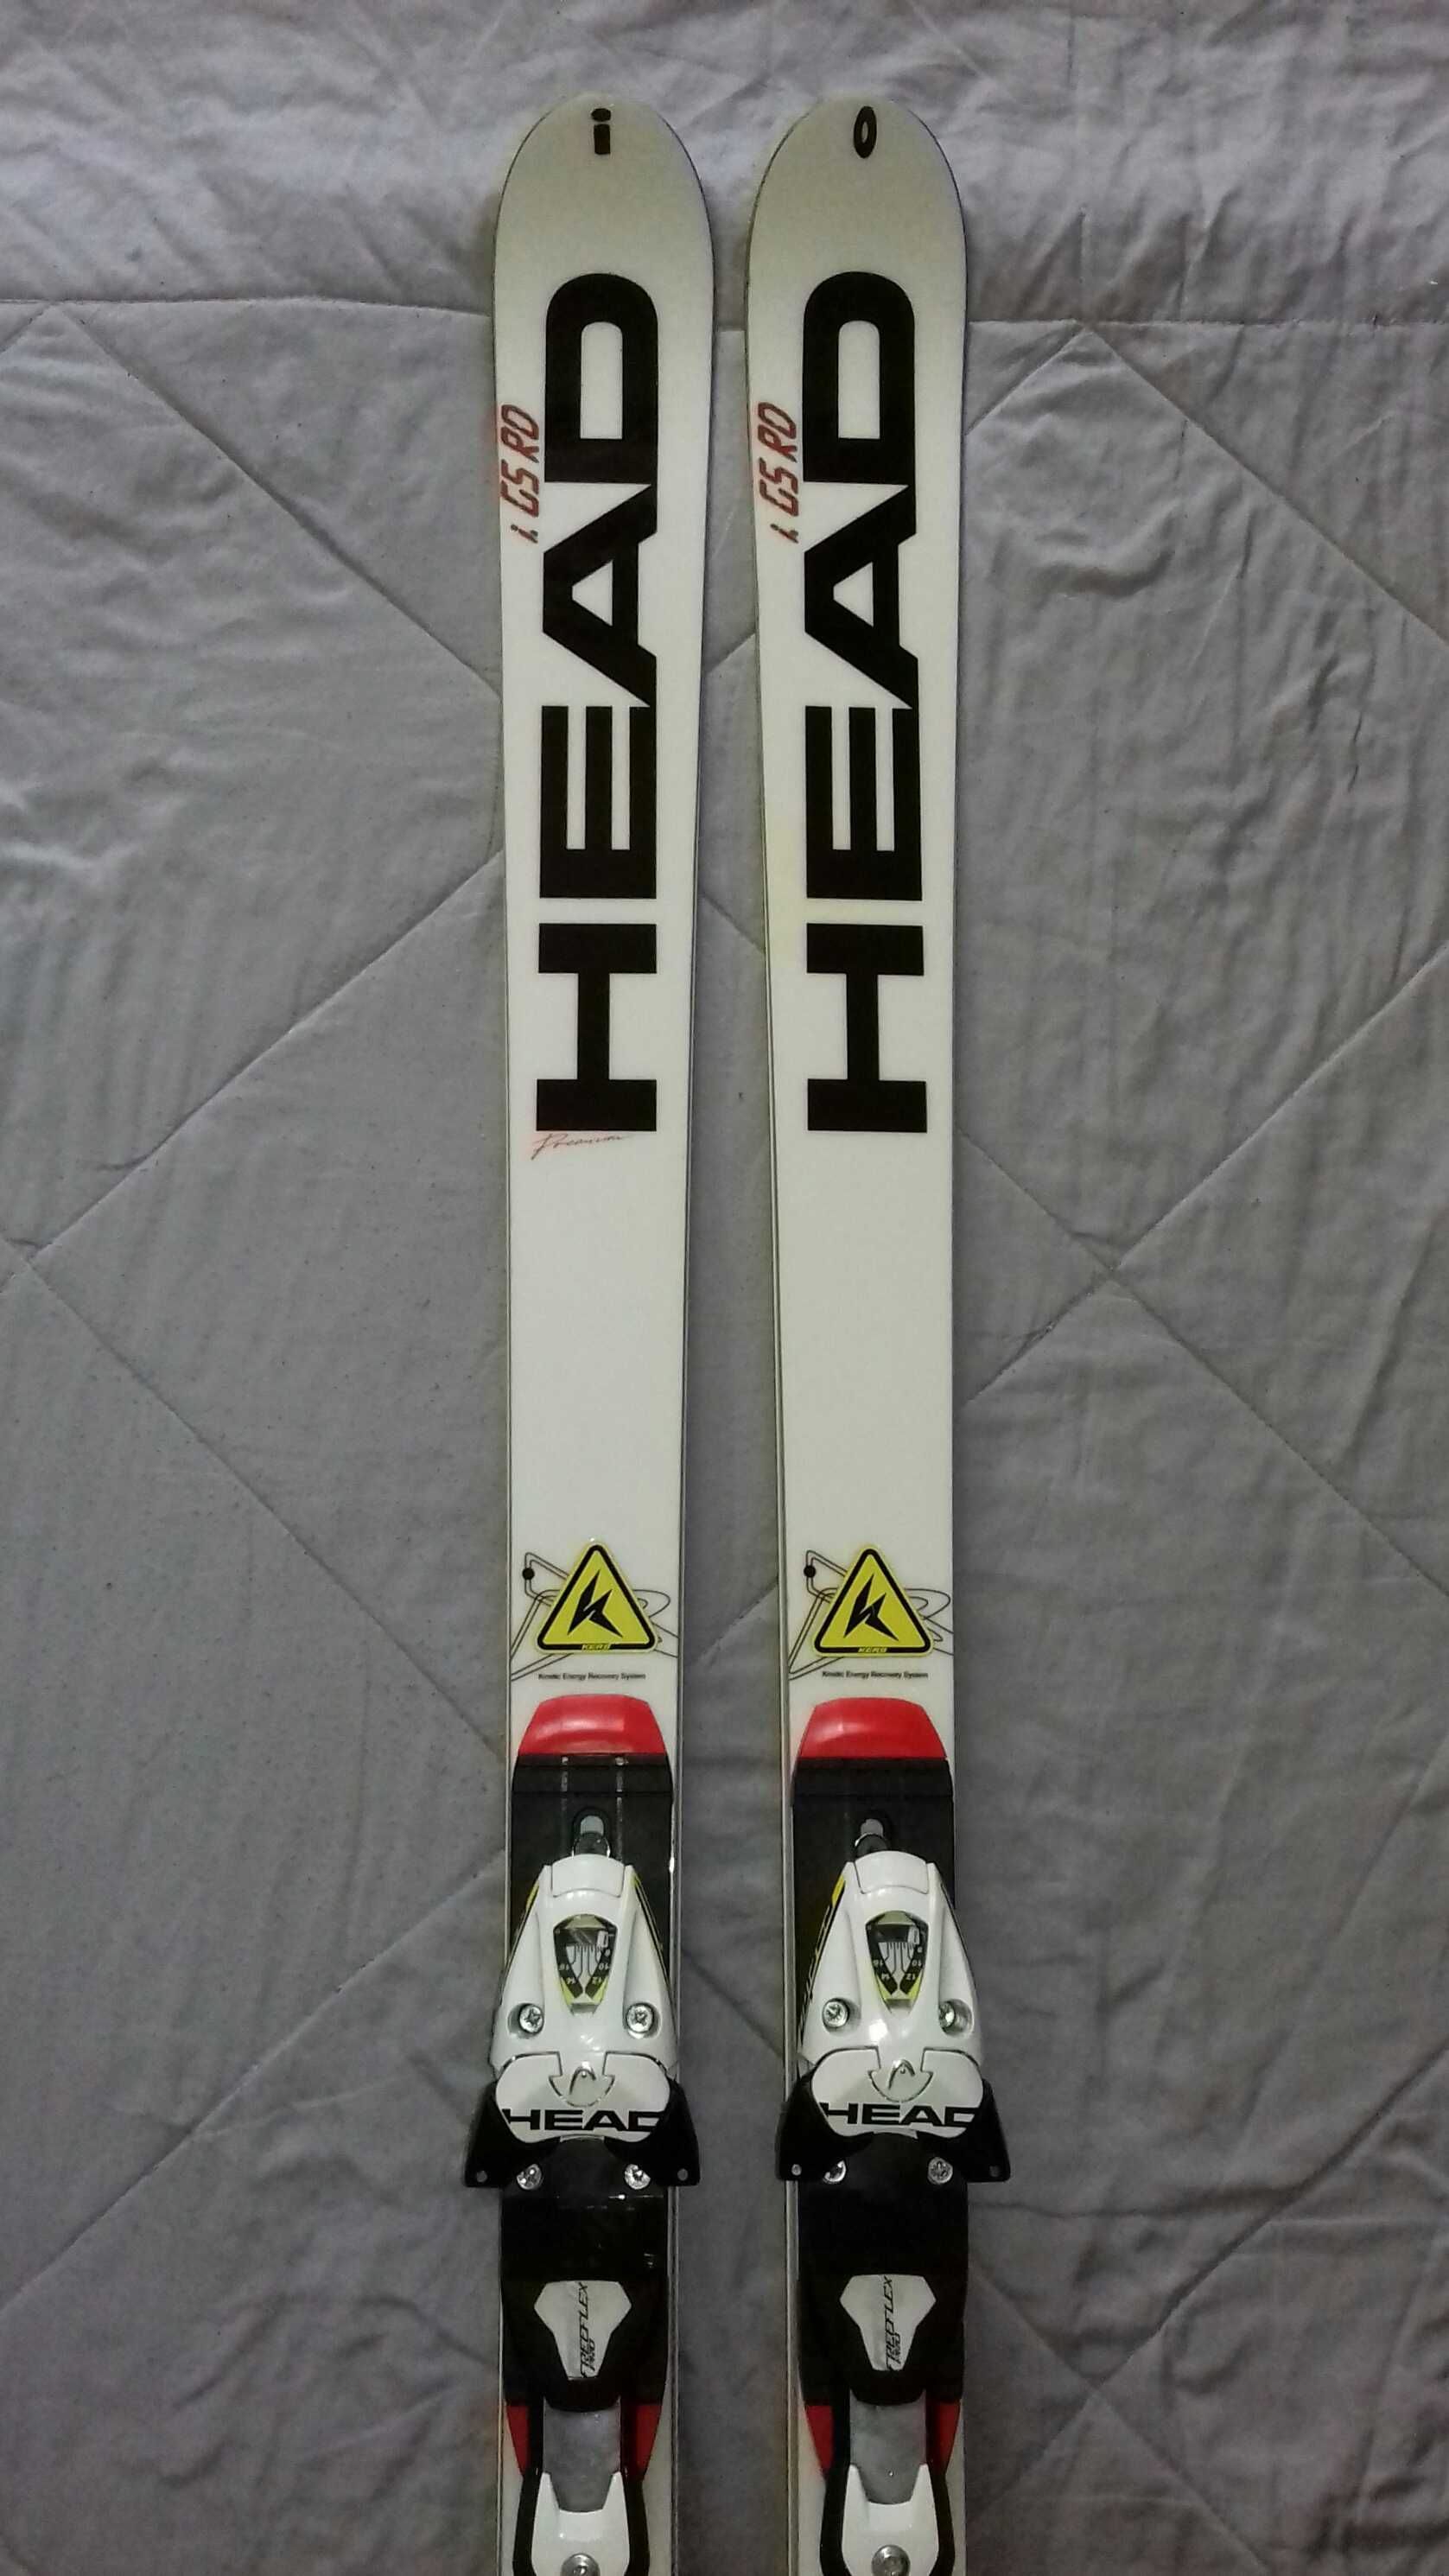 Австрийские лыжи HEAD I.GS.RD KERS спортцех WORLDCUP REBELS